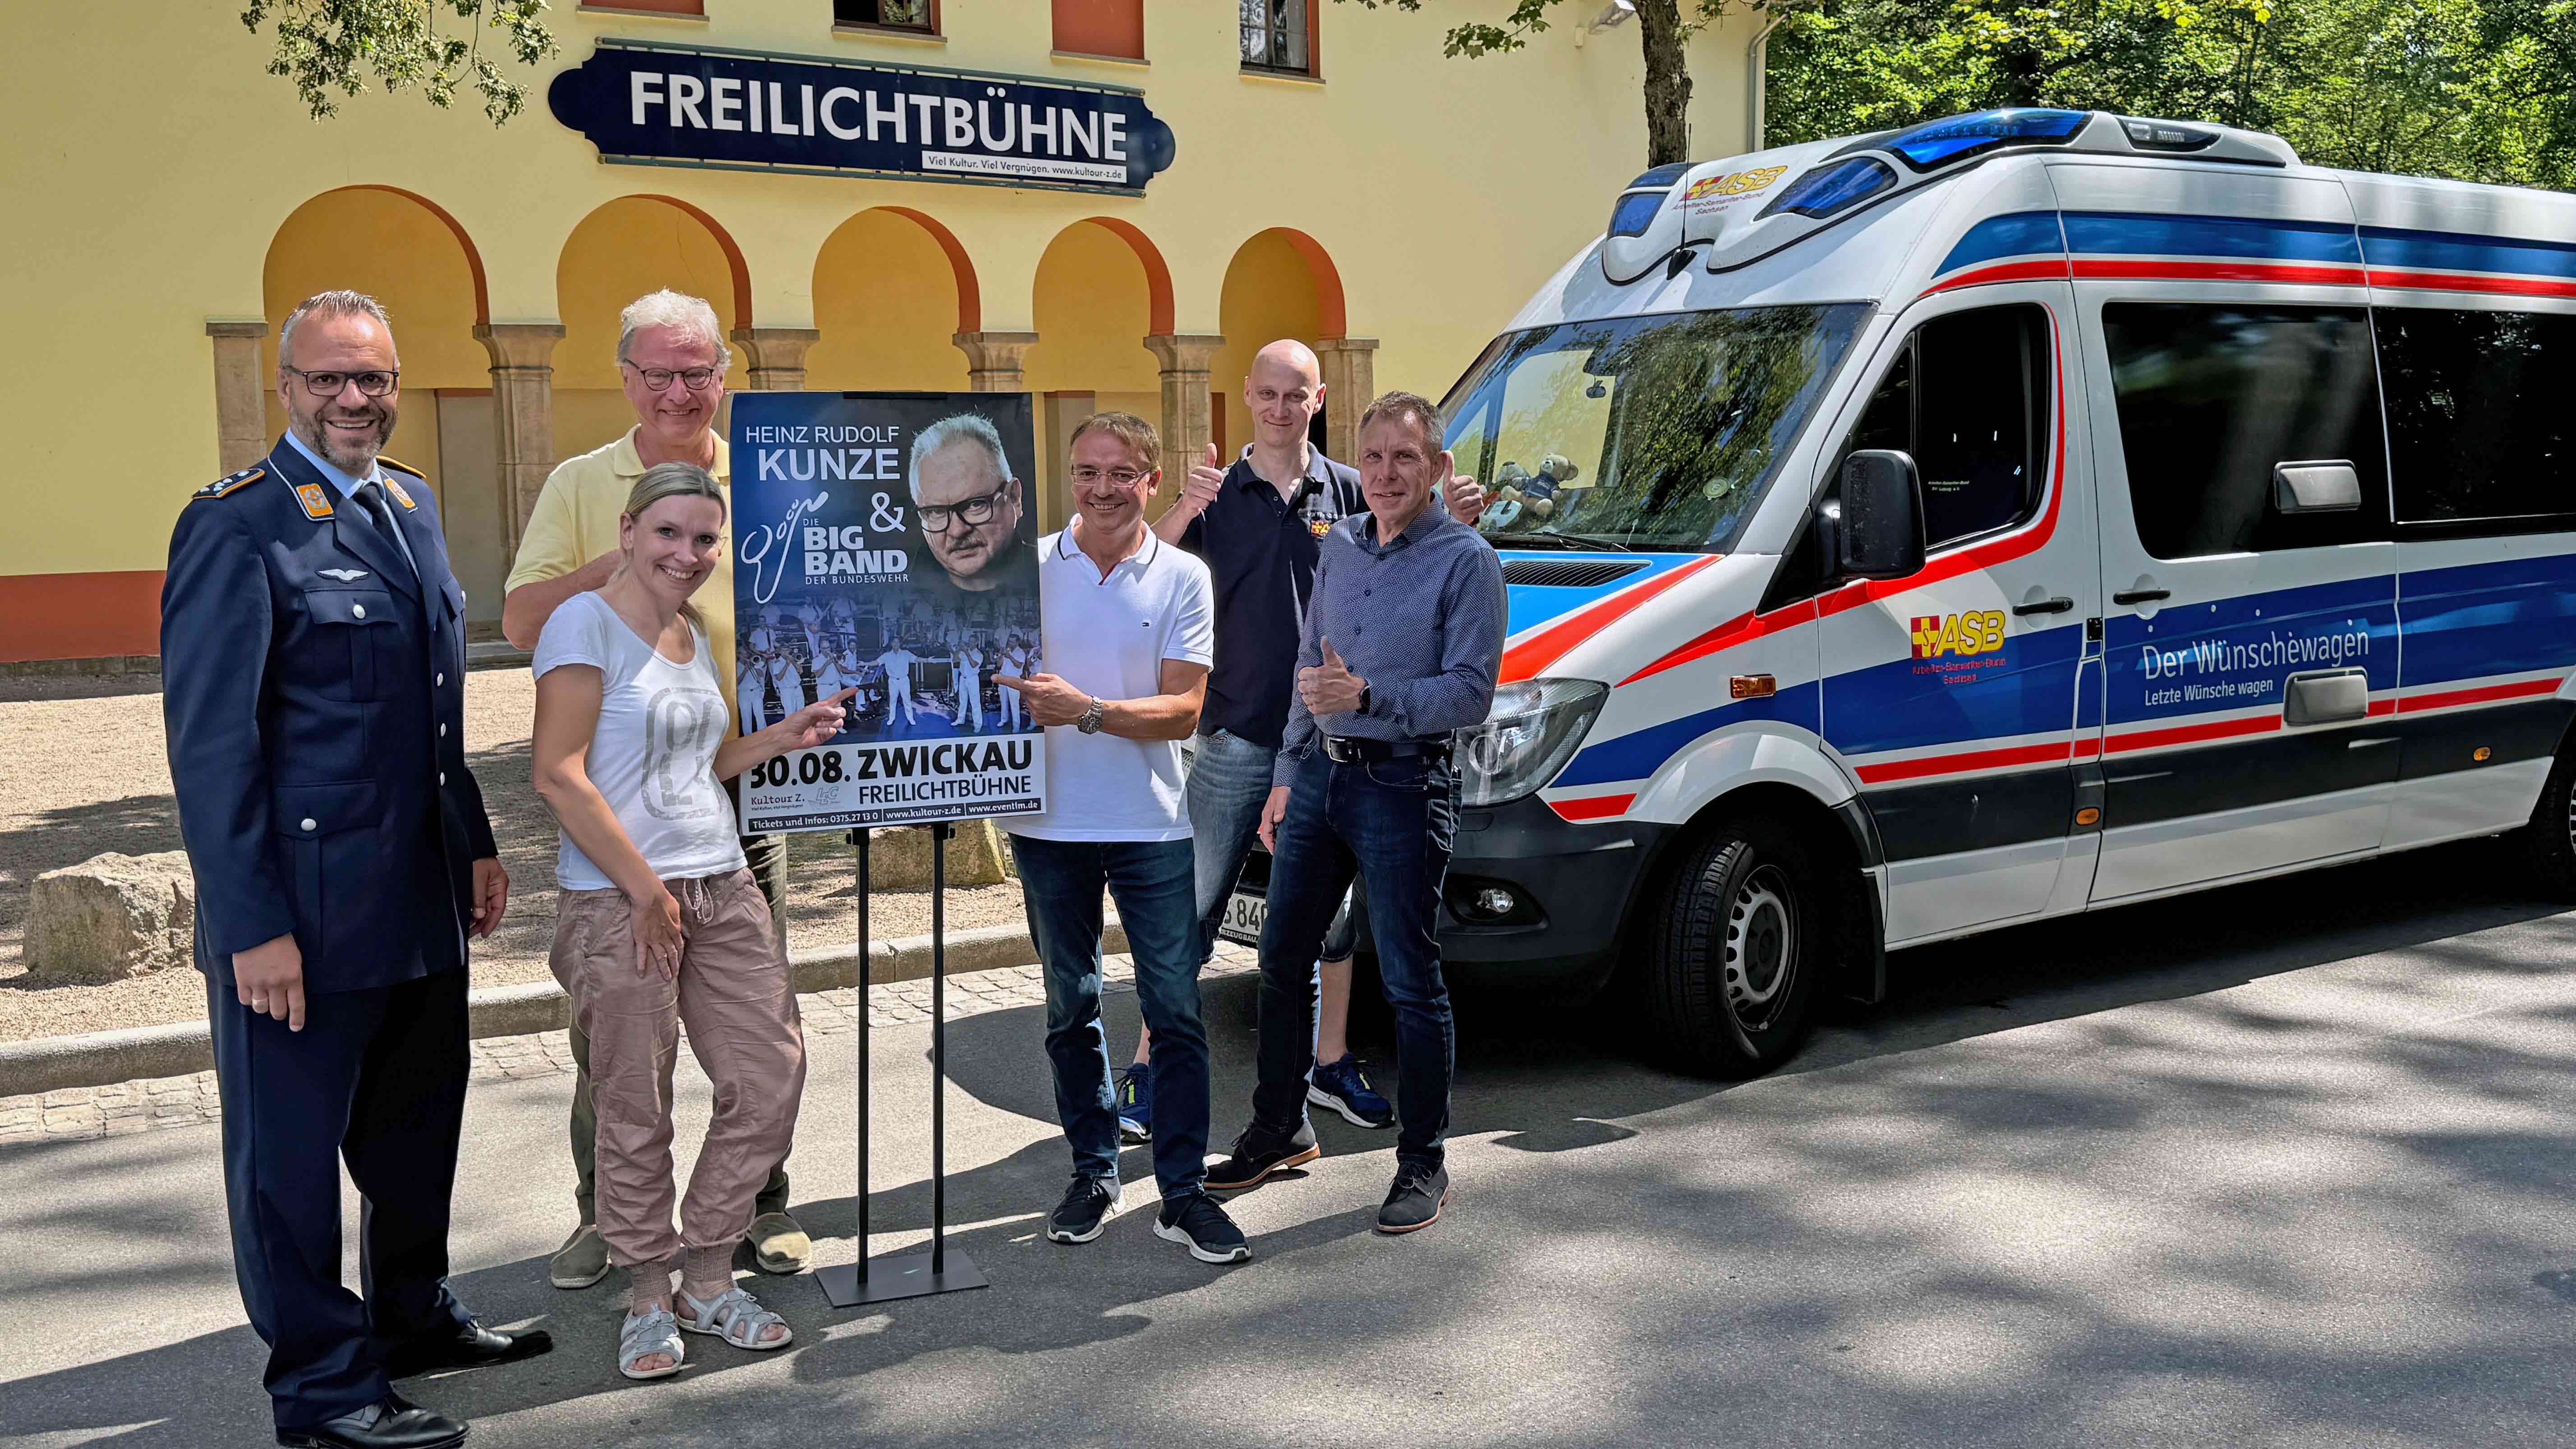 Heinz Rudolf Kunze und die Big Band der Bundeswehr unterstützen den Wünschewagen